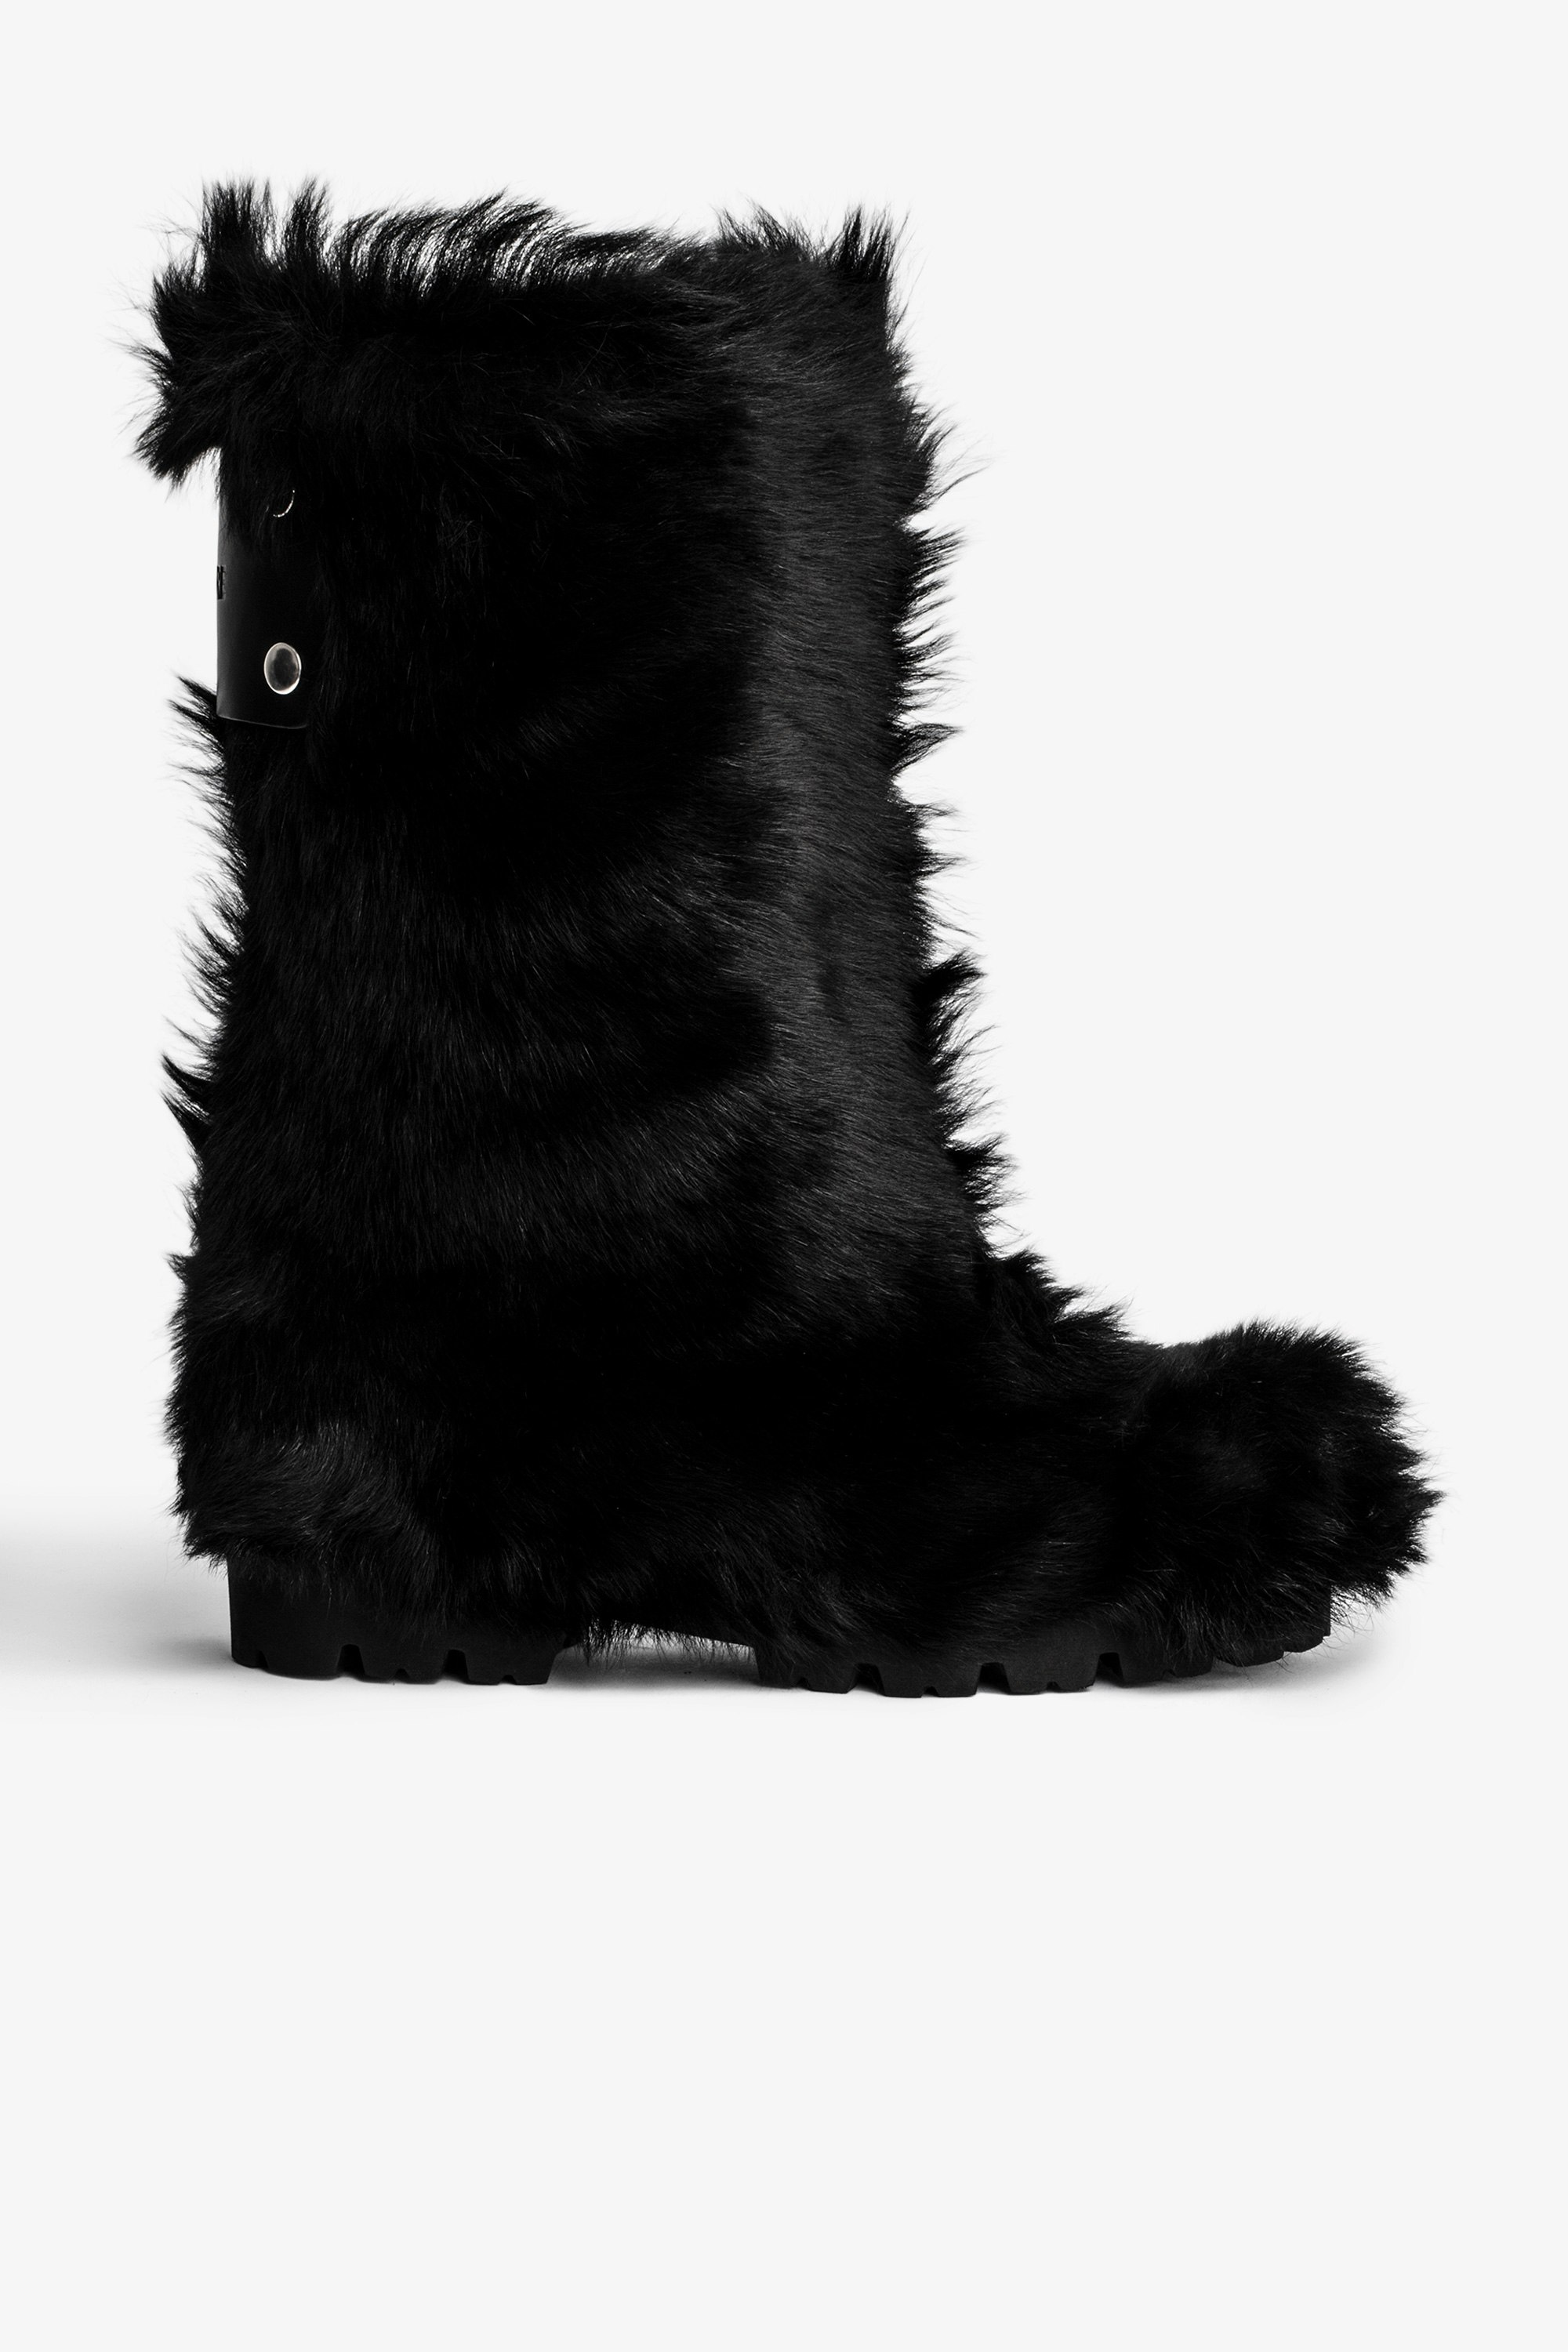 Stivaletti Joe Stivaletti in pelliccia sintetica nera con pannello posteriore in pelle con logo donna